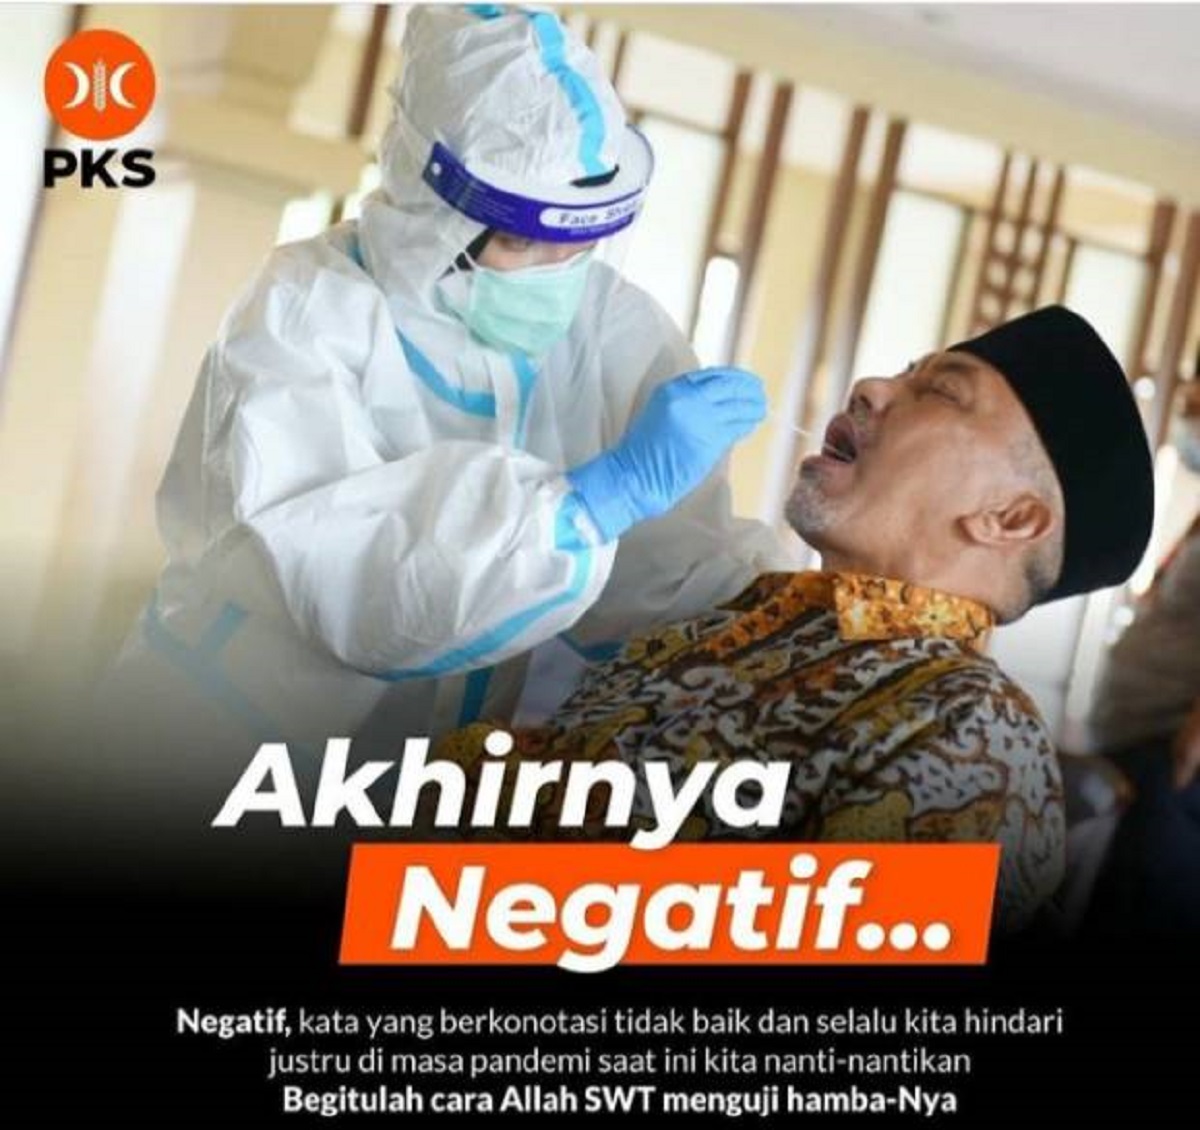 Presiden PKS Ahmad Syaikhu: Akhirnya Negatif...